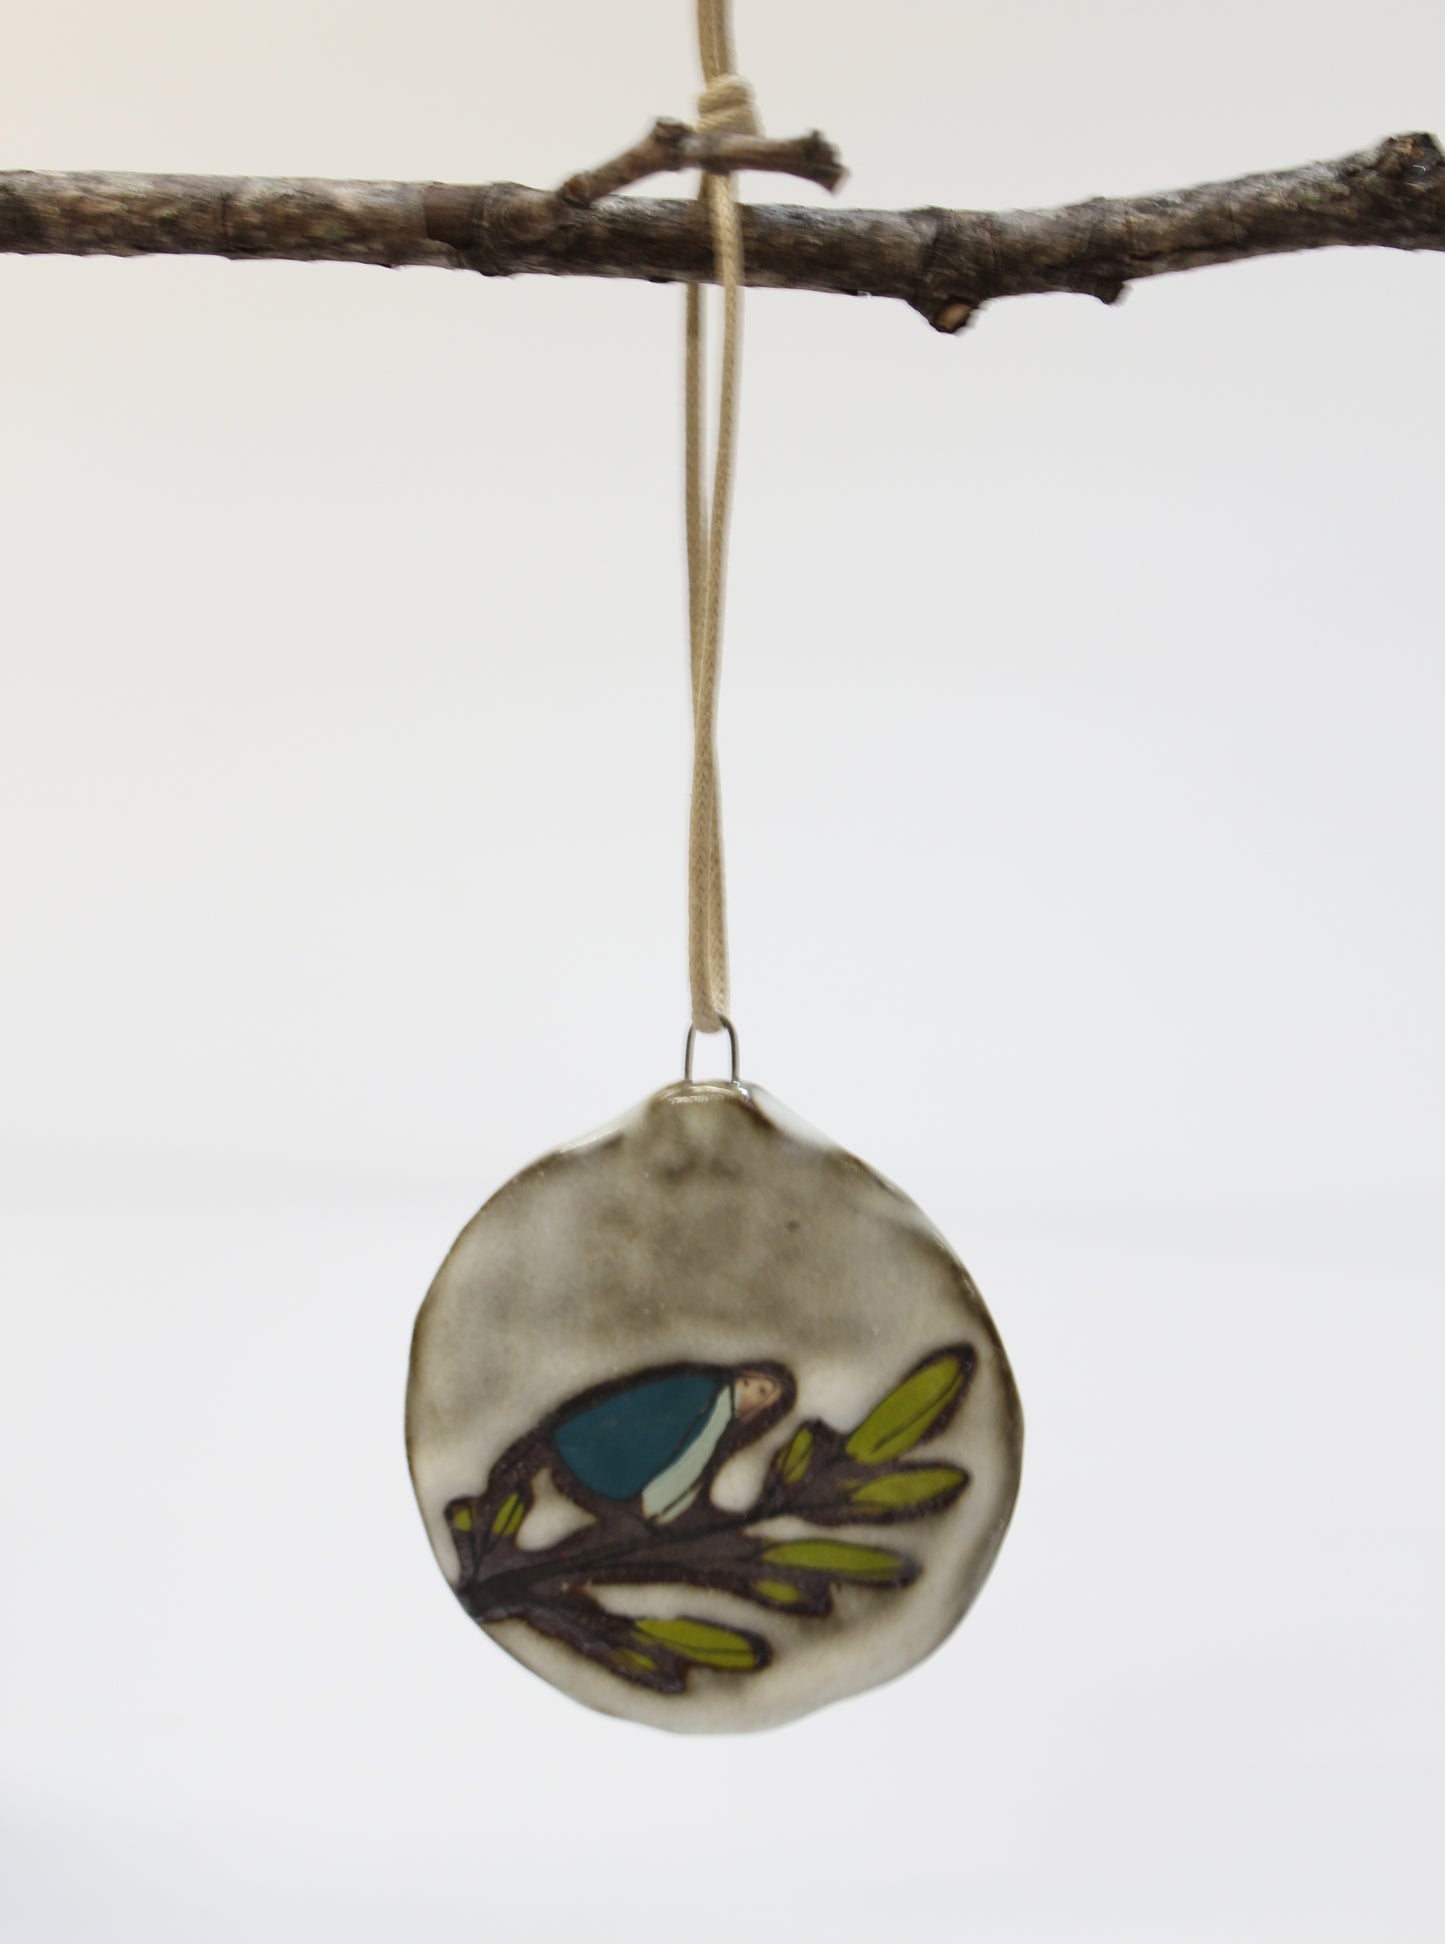 45. Teal Bird Flat Ornament. 3" x 2.5"